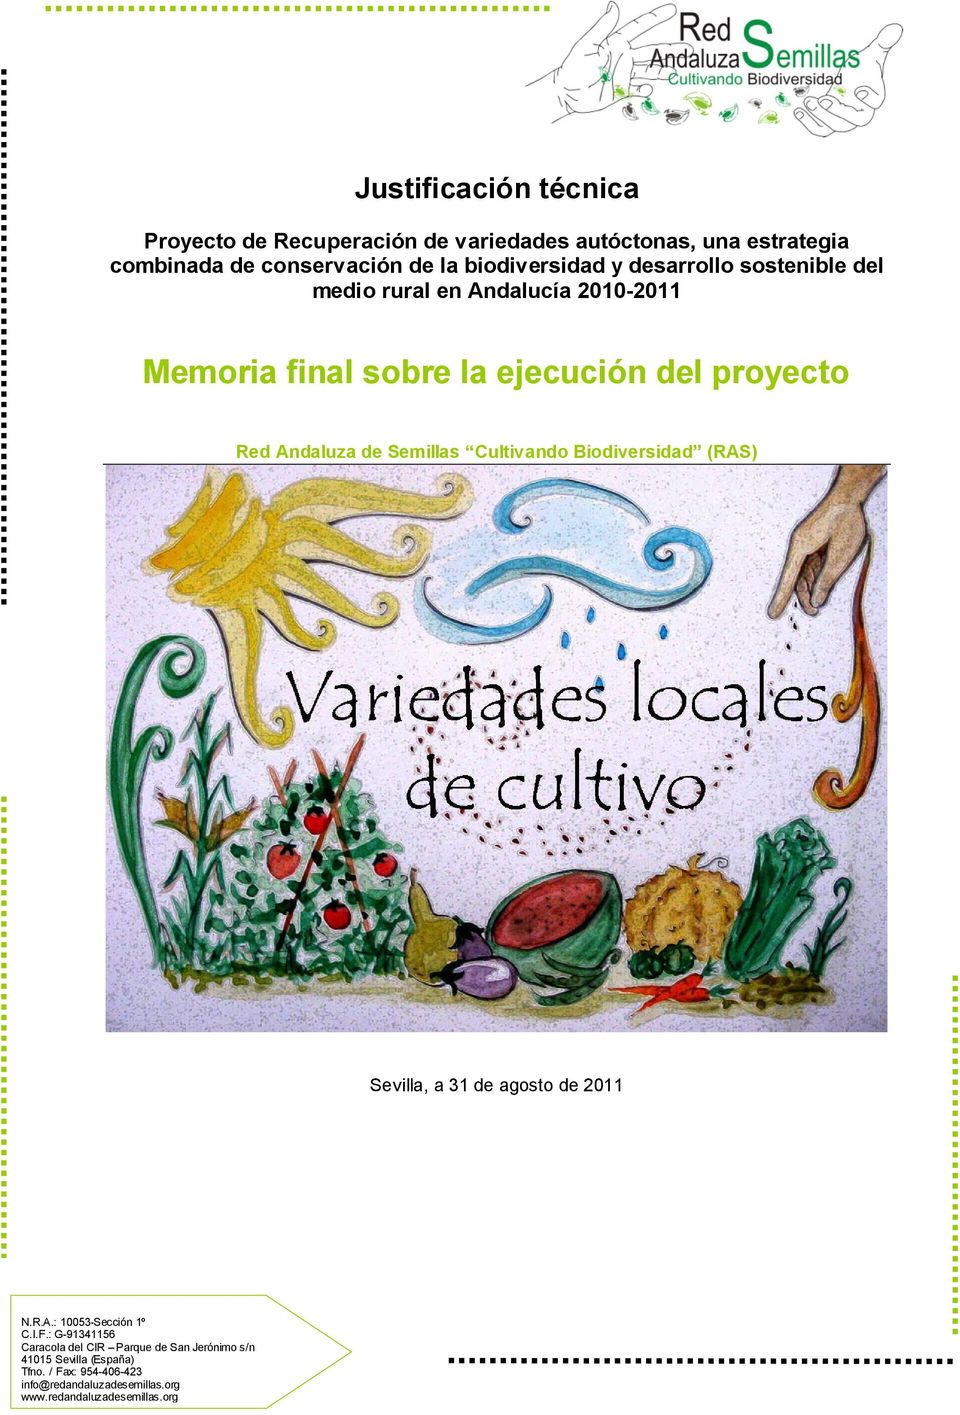 del medio rural en Andalucía 2010-2011 Memoria final sobre la ejecución del